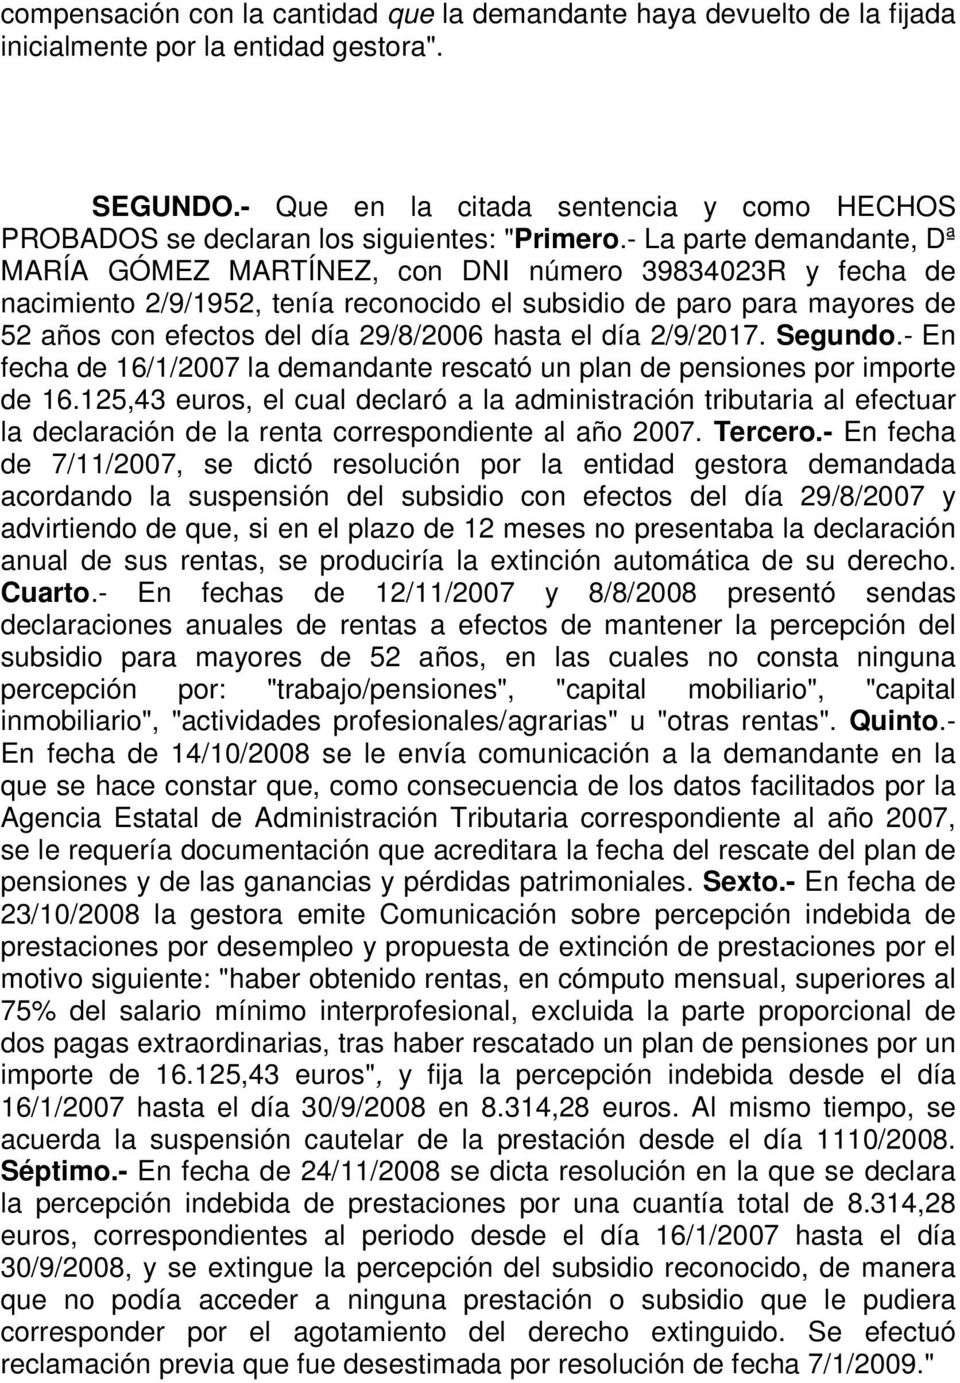 - La parte demandante, Dª MARÍA GÓMEZ MARTÍNEZ, con DNI número 39834023R y fecha de nacimiento 2/9/1952, tenía reconocido el subsidio de paro para mayores de 52 años con efectos del día 29/8/2006